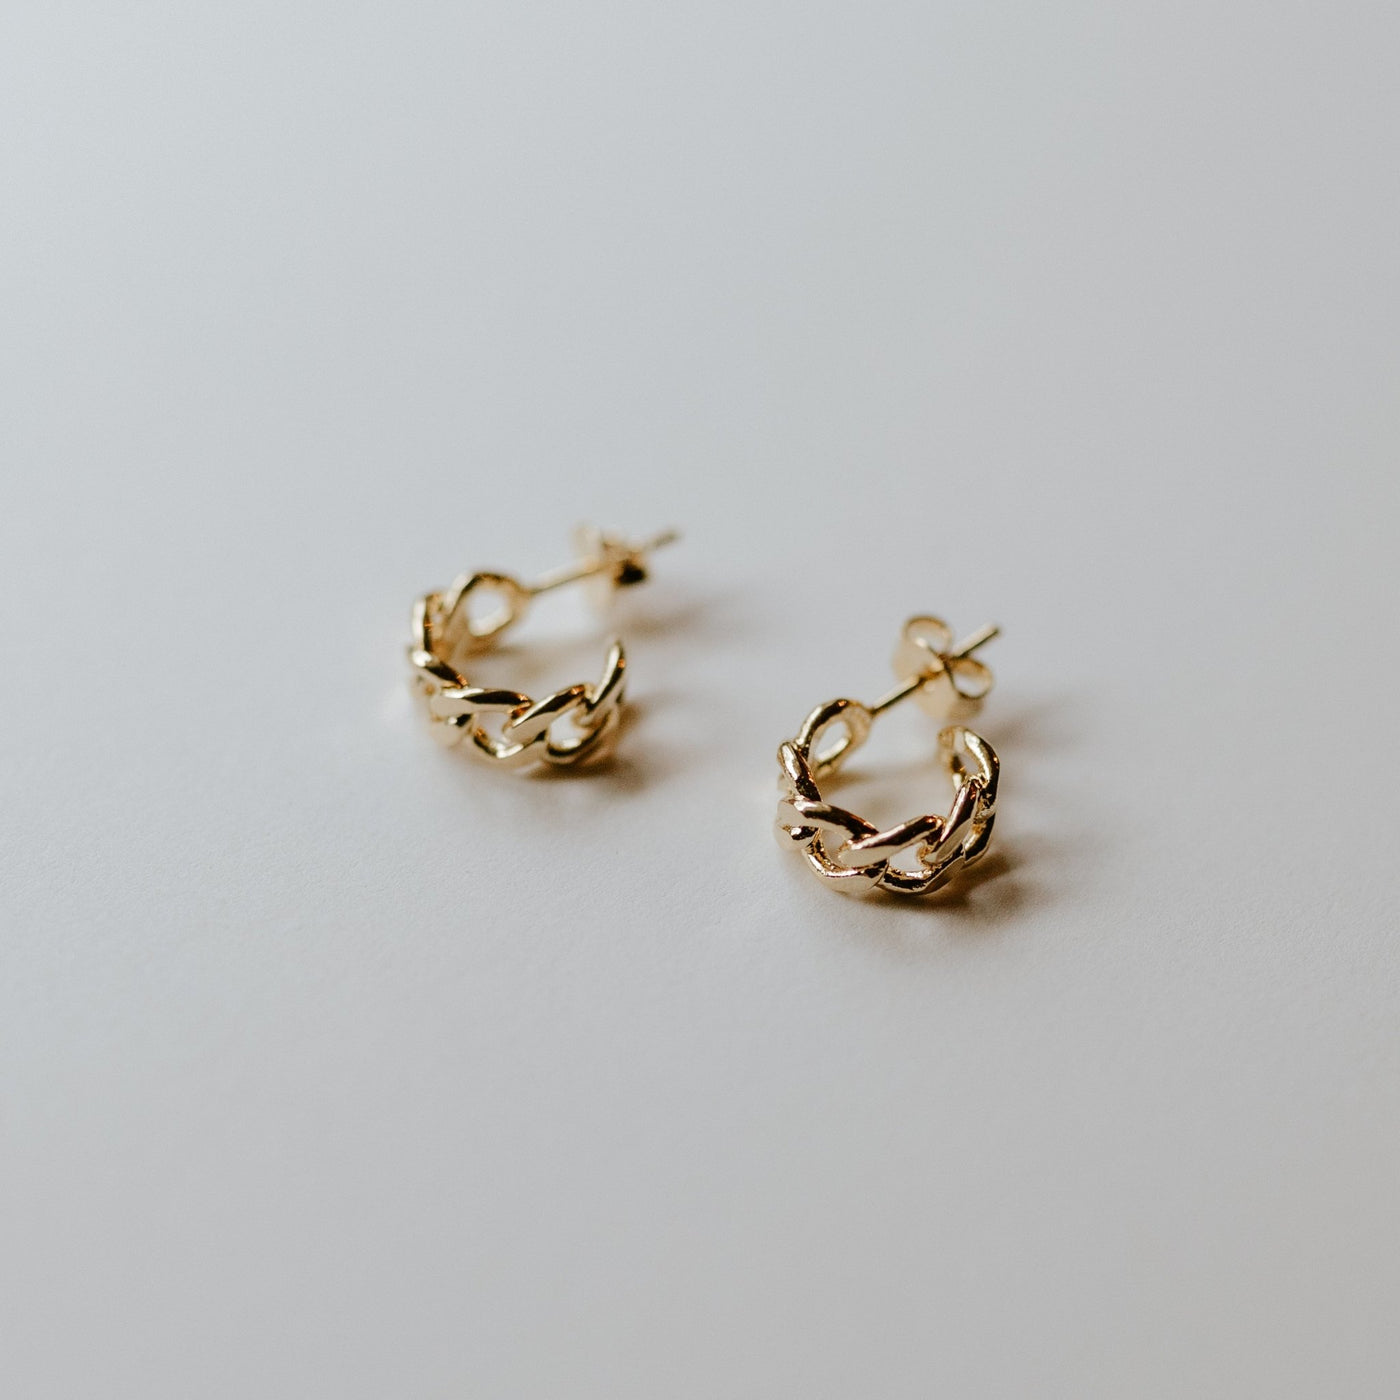 Rome Earrings - Jillian Leigh Jewellery - earrings